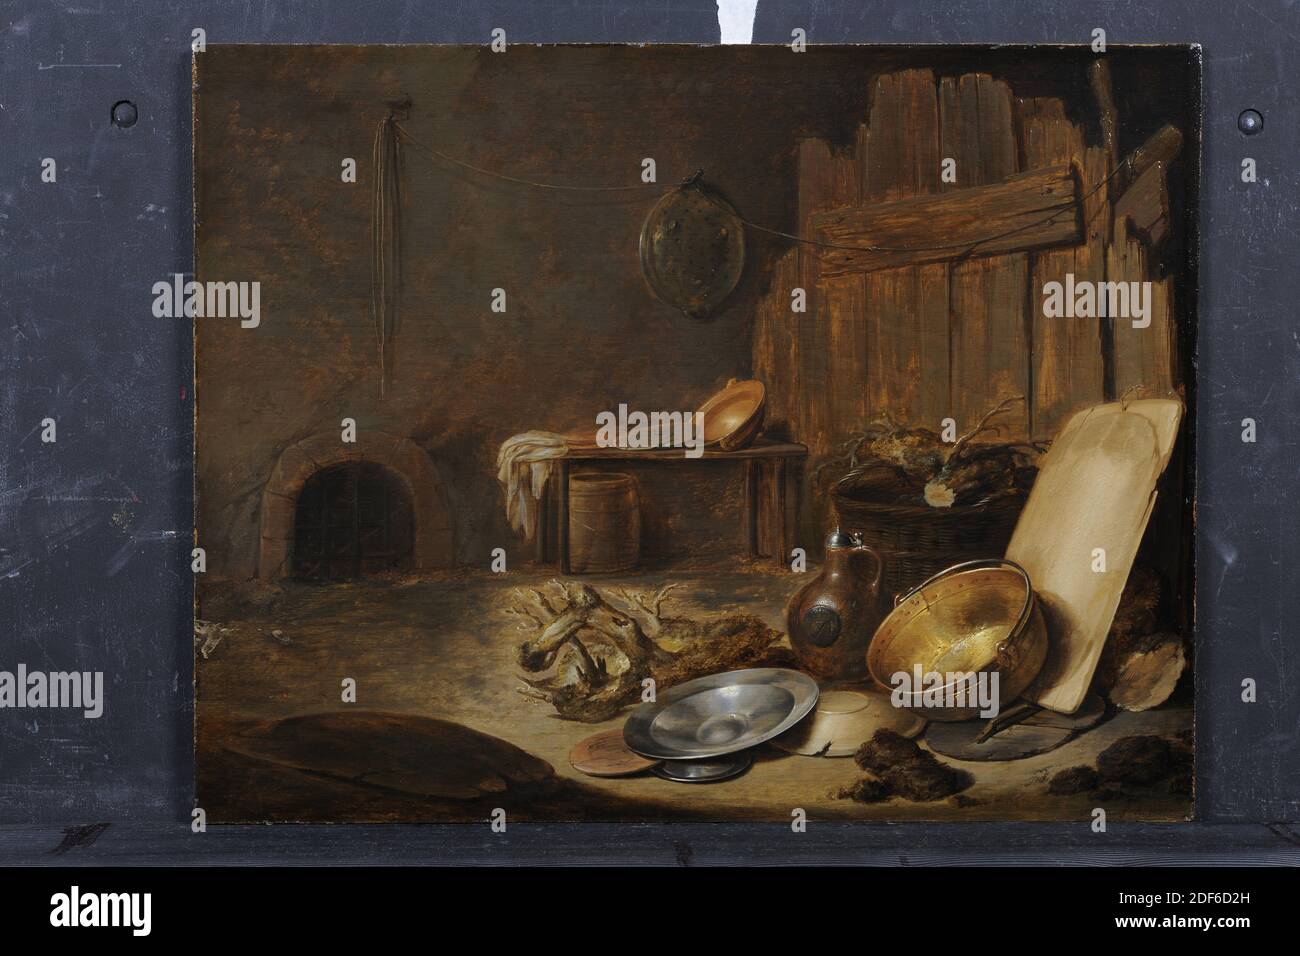 Peinture, Jan Davidsz. De Heem, 1631, Signature avant, en bas à droite: JDHeem.fA1631 [JDH inéne], panneau, peinture à l'huile, peint, support: 37.8 x 49 x 0.4cm (378 x 490 x 4mm), avec cadre: 49.5 x 60.3 x 5,4cm (495 x 603 x 54mm), stable, intérieur, encore à vie intérieure ou intérieur. L'intérieur d'une écurie montre des ustensiles de cuisine en bois, poterie et étain, y compris une carafe en grès et une assiette en étain. Vous pouvez également voir les racines de l'arbre et un tableau en arrière-plan. Dans le mur arrière se trouve une ouverture en forme d'arc sur la gauche, dans laquelle la grille peut être vue. Signé en bas à droite Banque D'Images